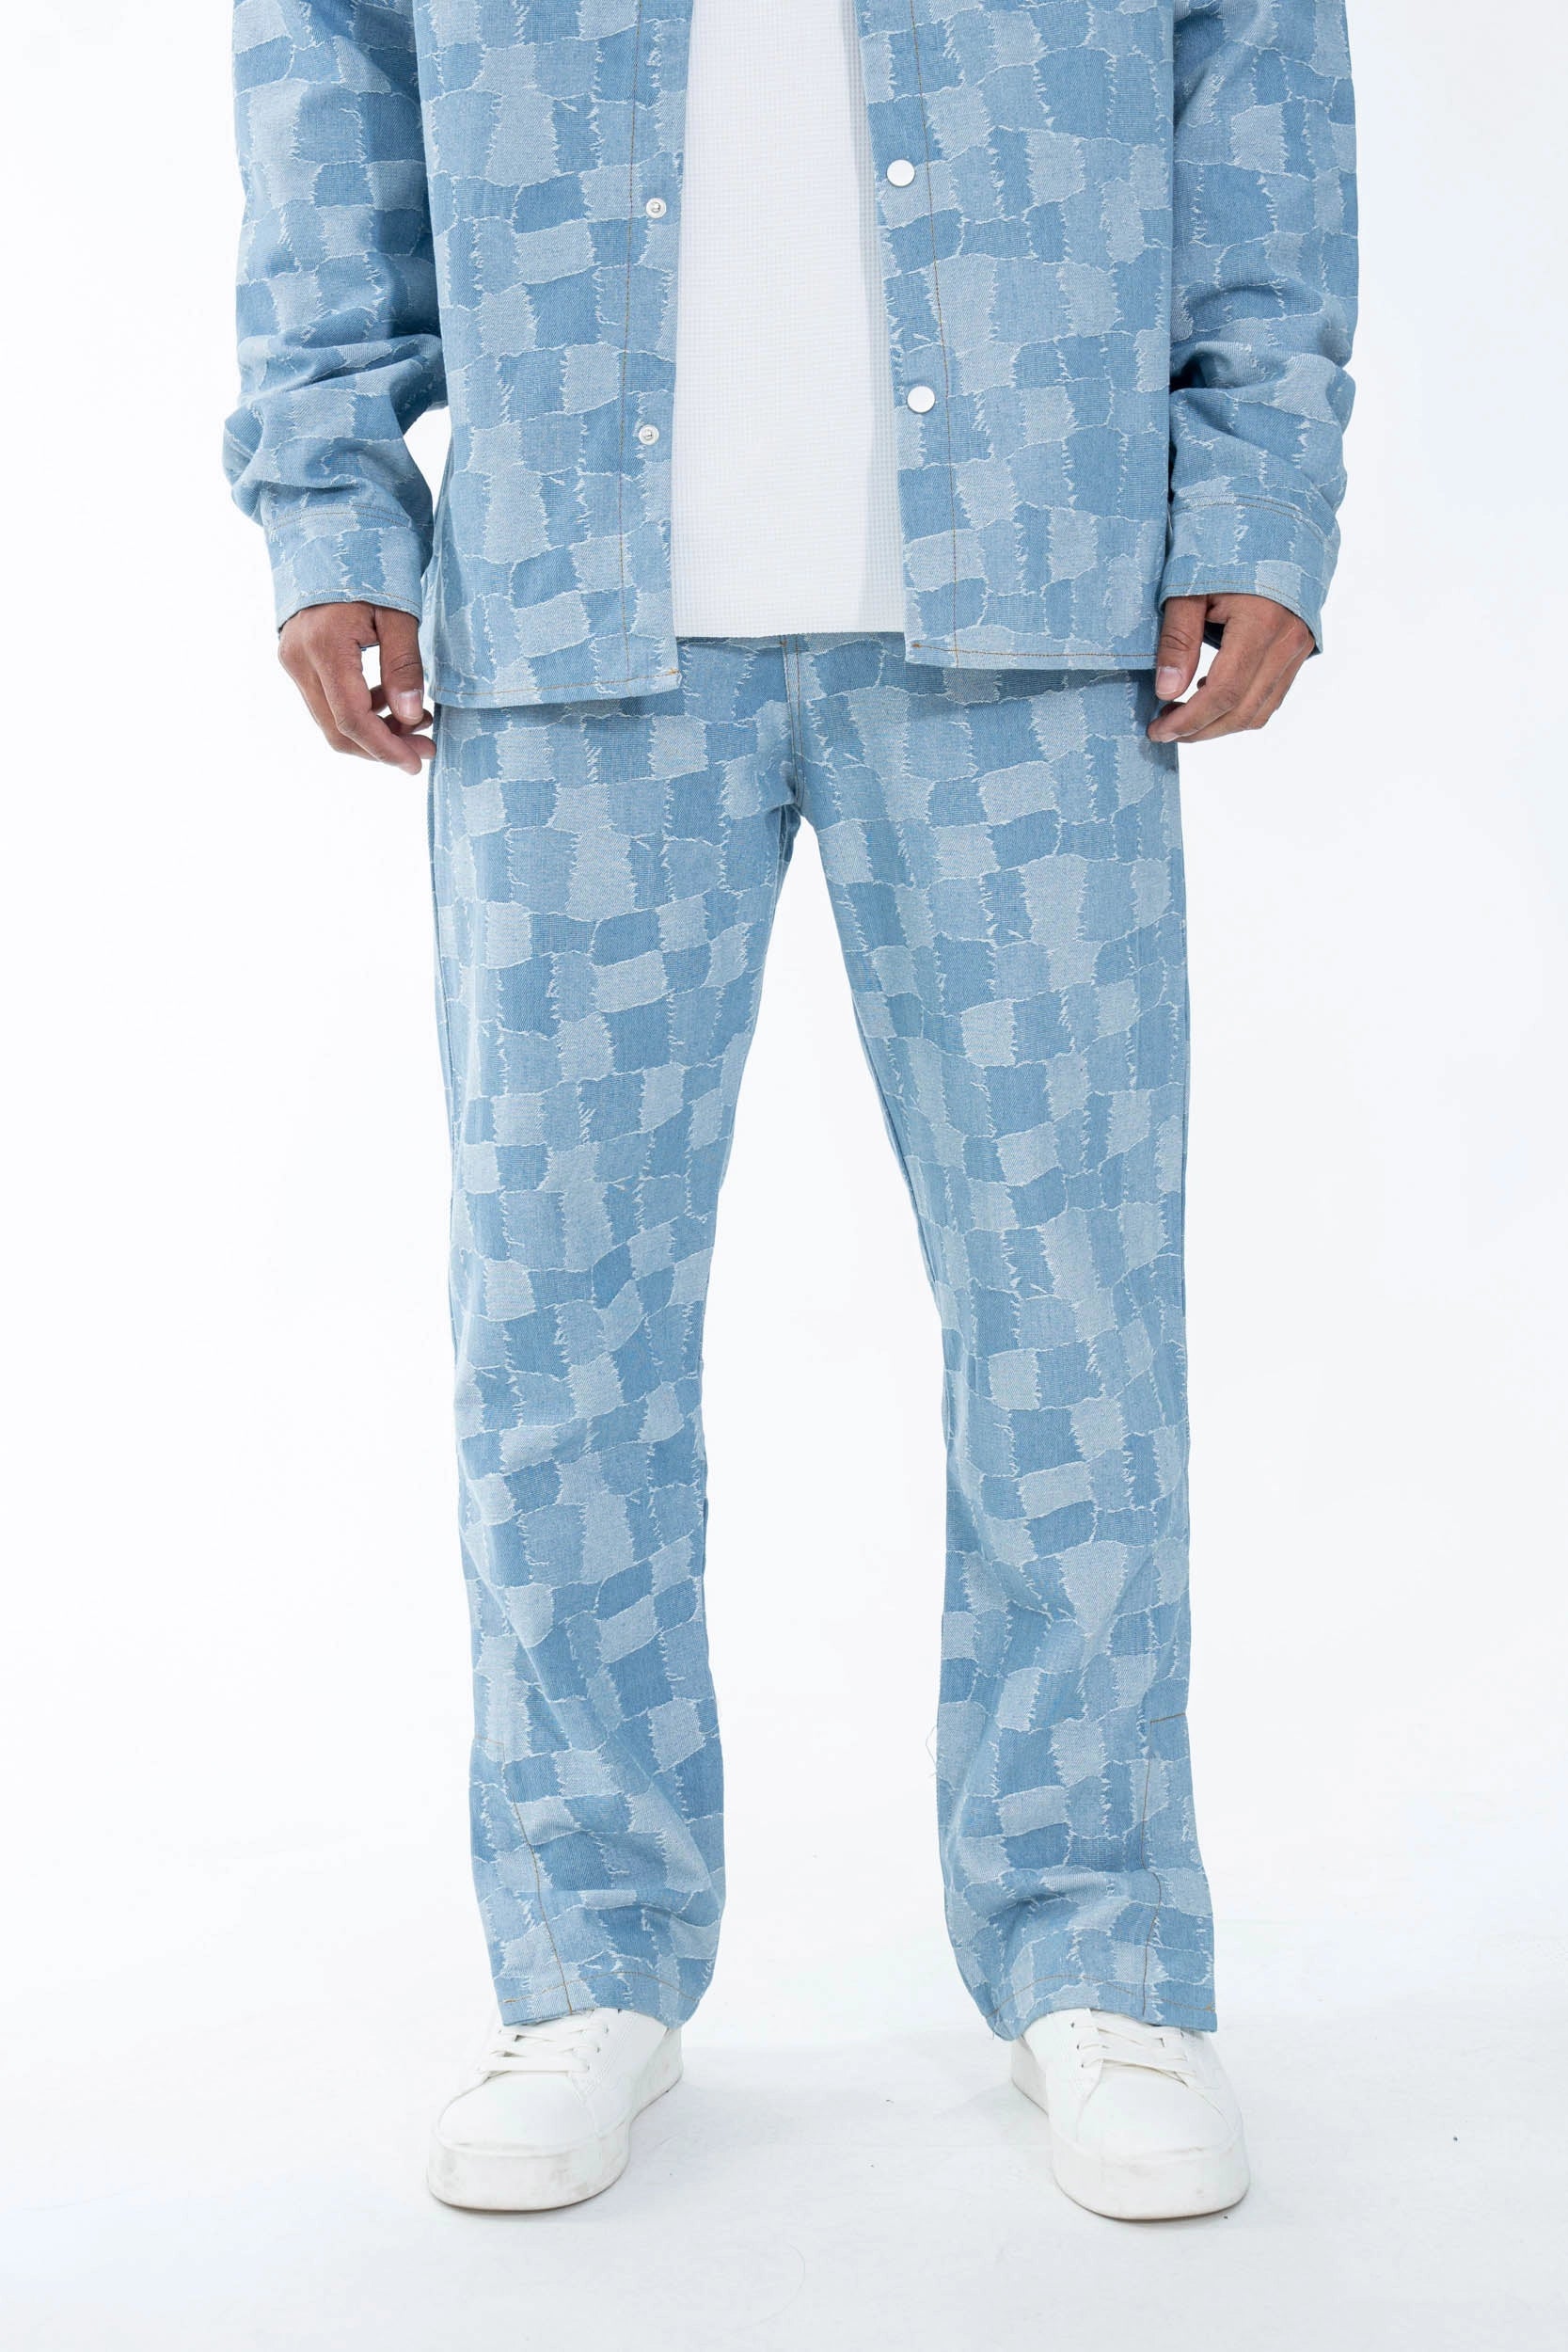 Ensemble chemise pantalon assorti avec un motif de carrés